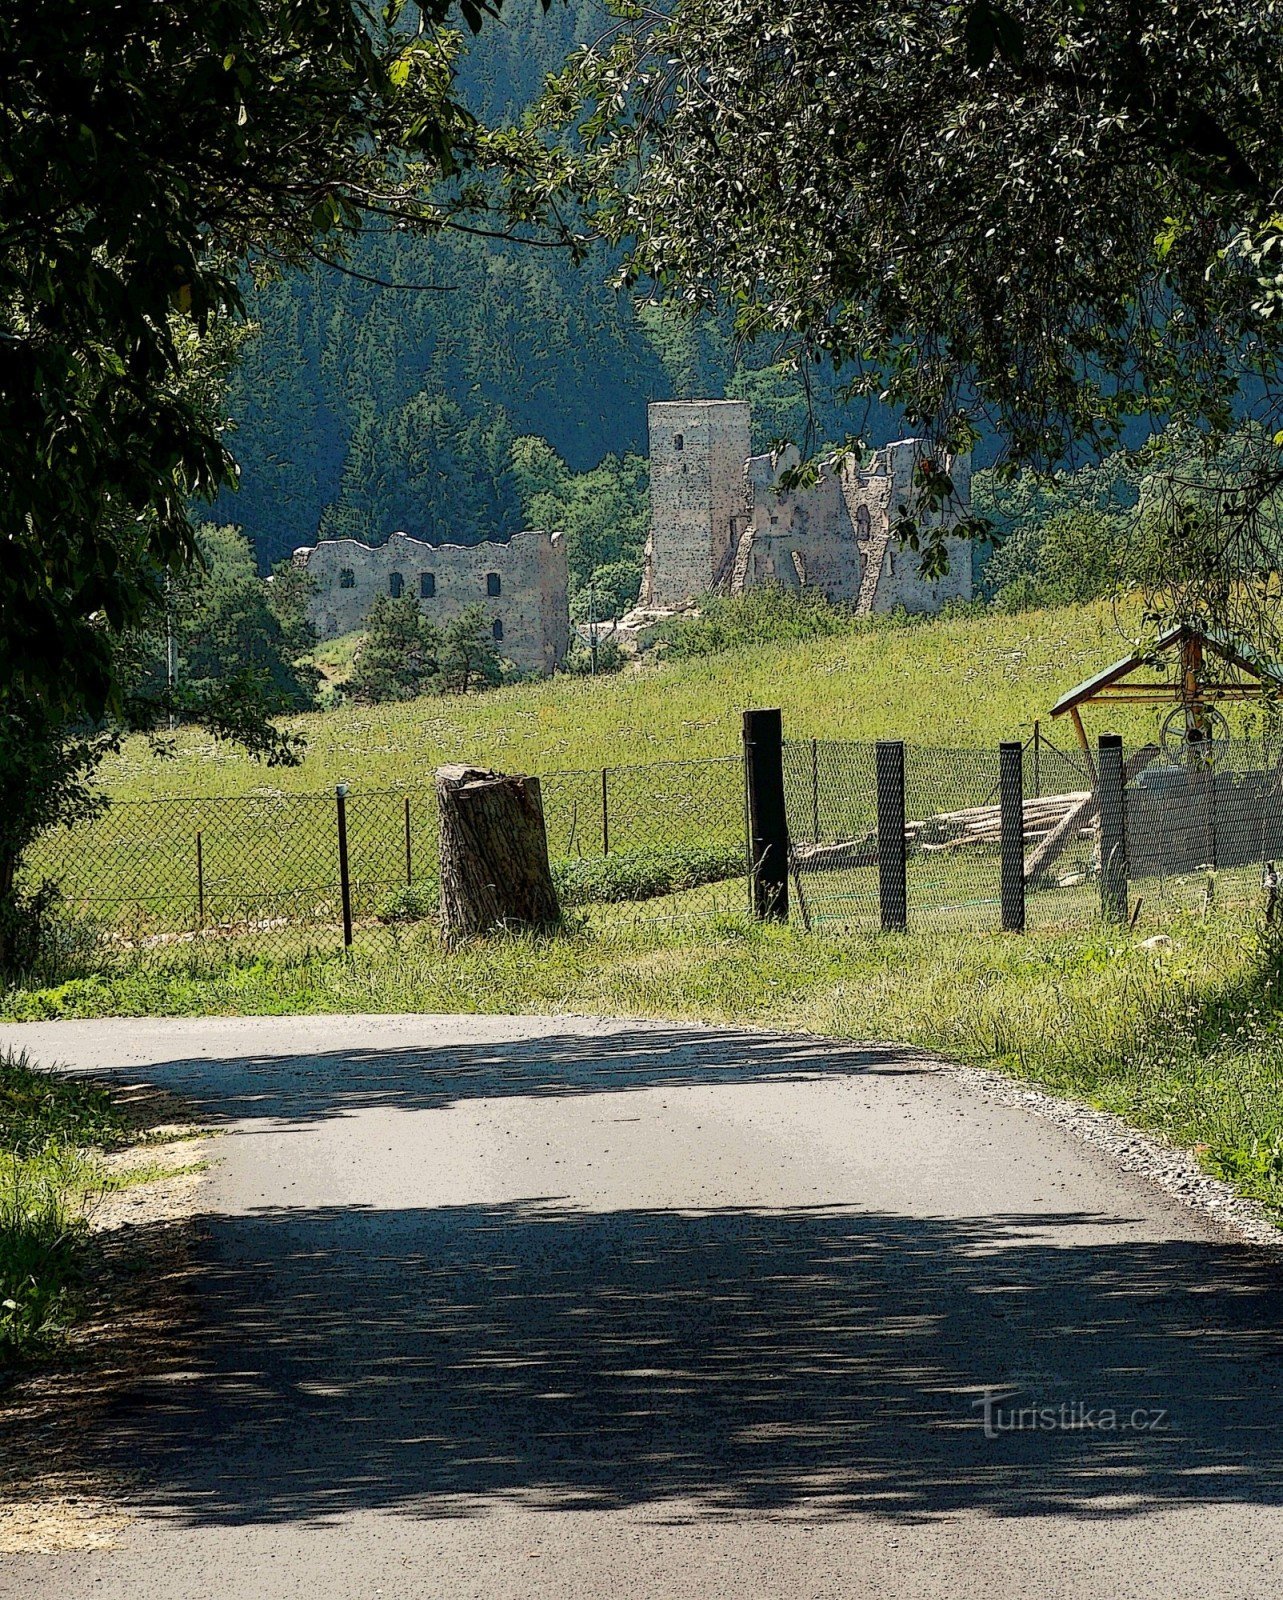 Excursion to the ruins of Rokštejna Castle in Vysočina